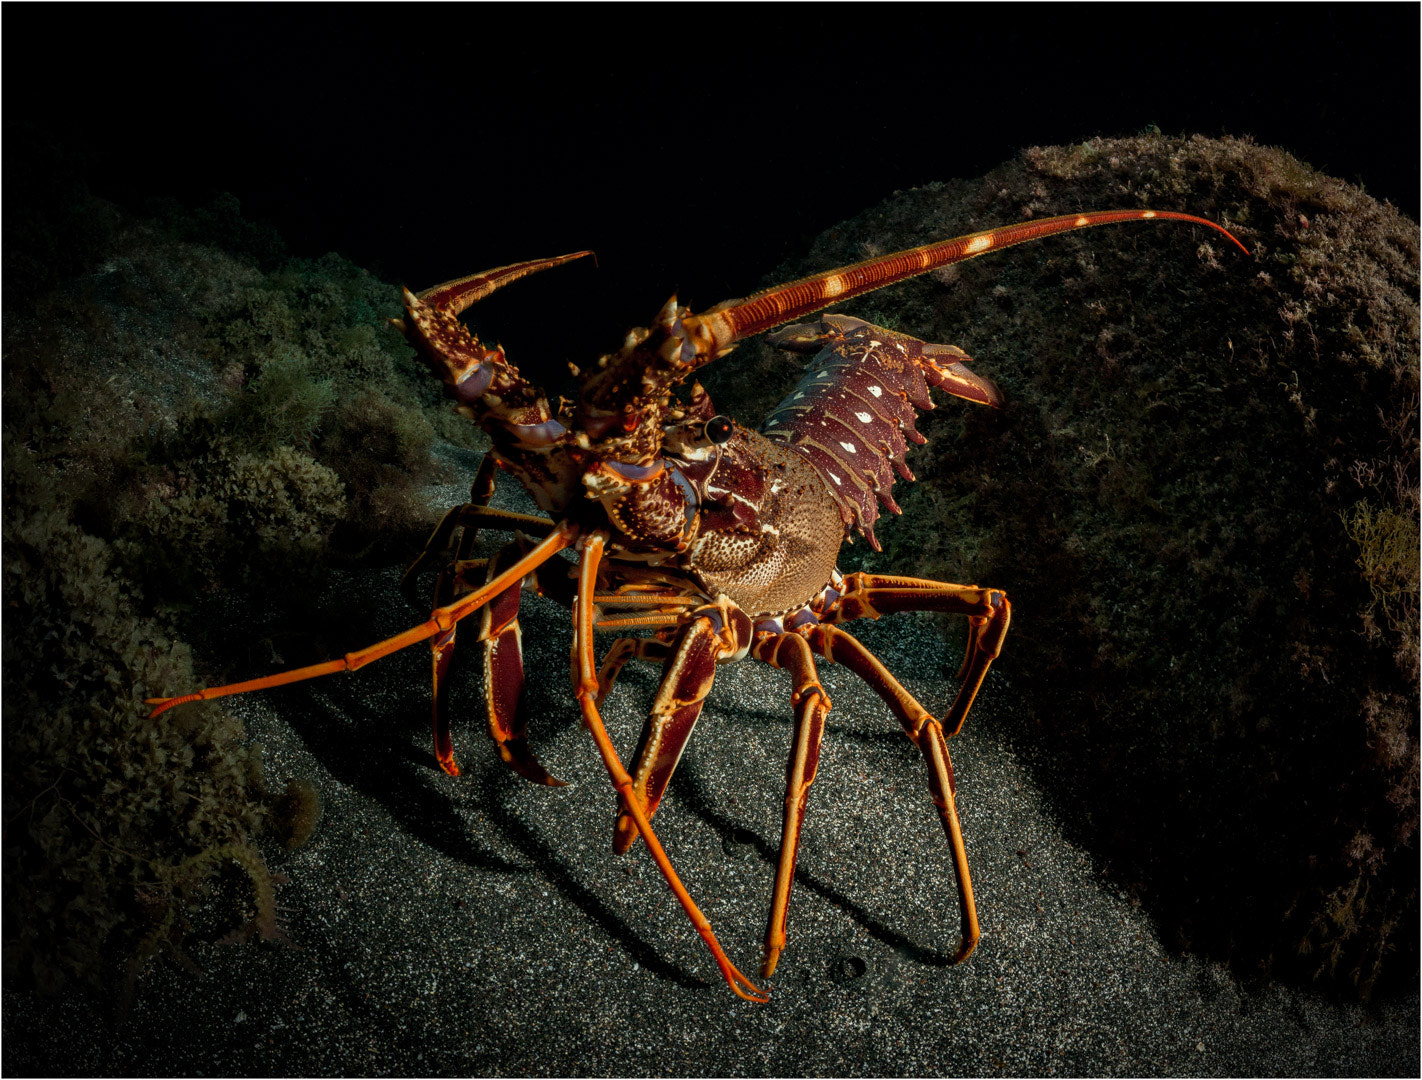 Nikon D800E + Nikon AF Fisheye-Nikkor 16mm F2.8D sample photo. Spiny lobster at night photography